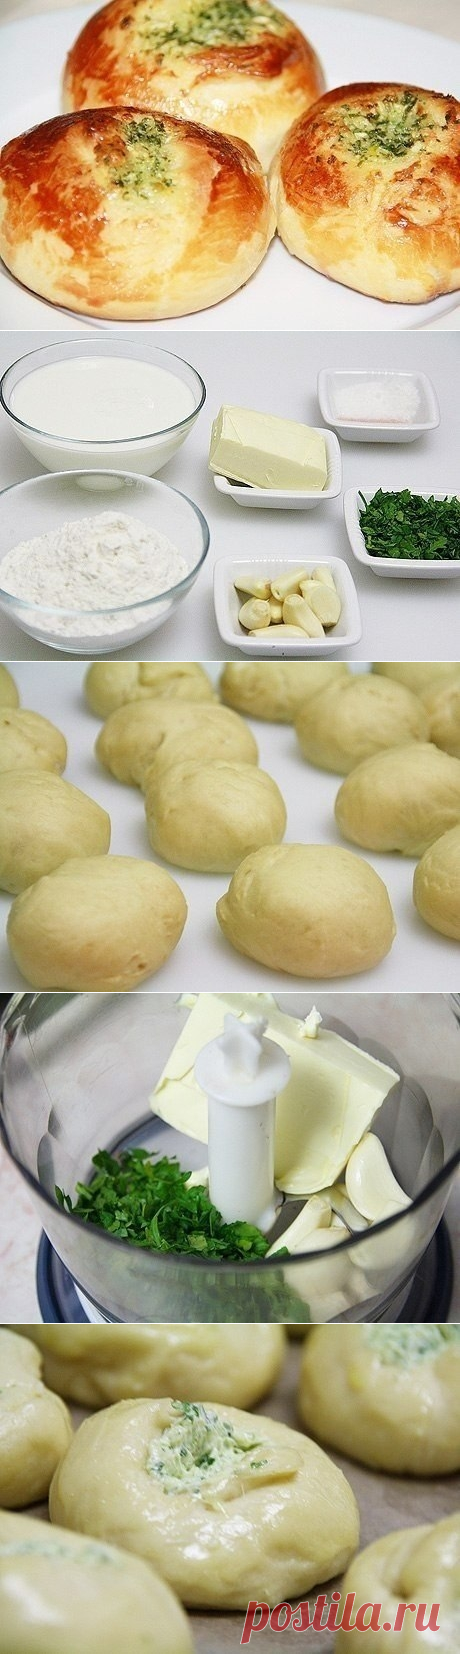 Как приготовить чесночные булочки - рецепт, ингридиенты и фотографии